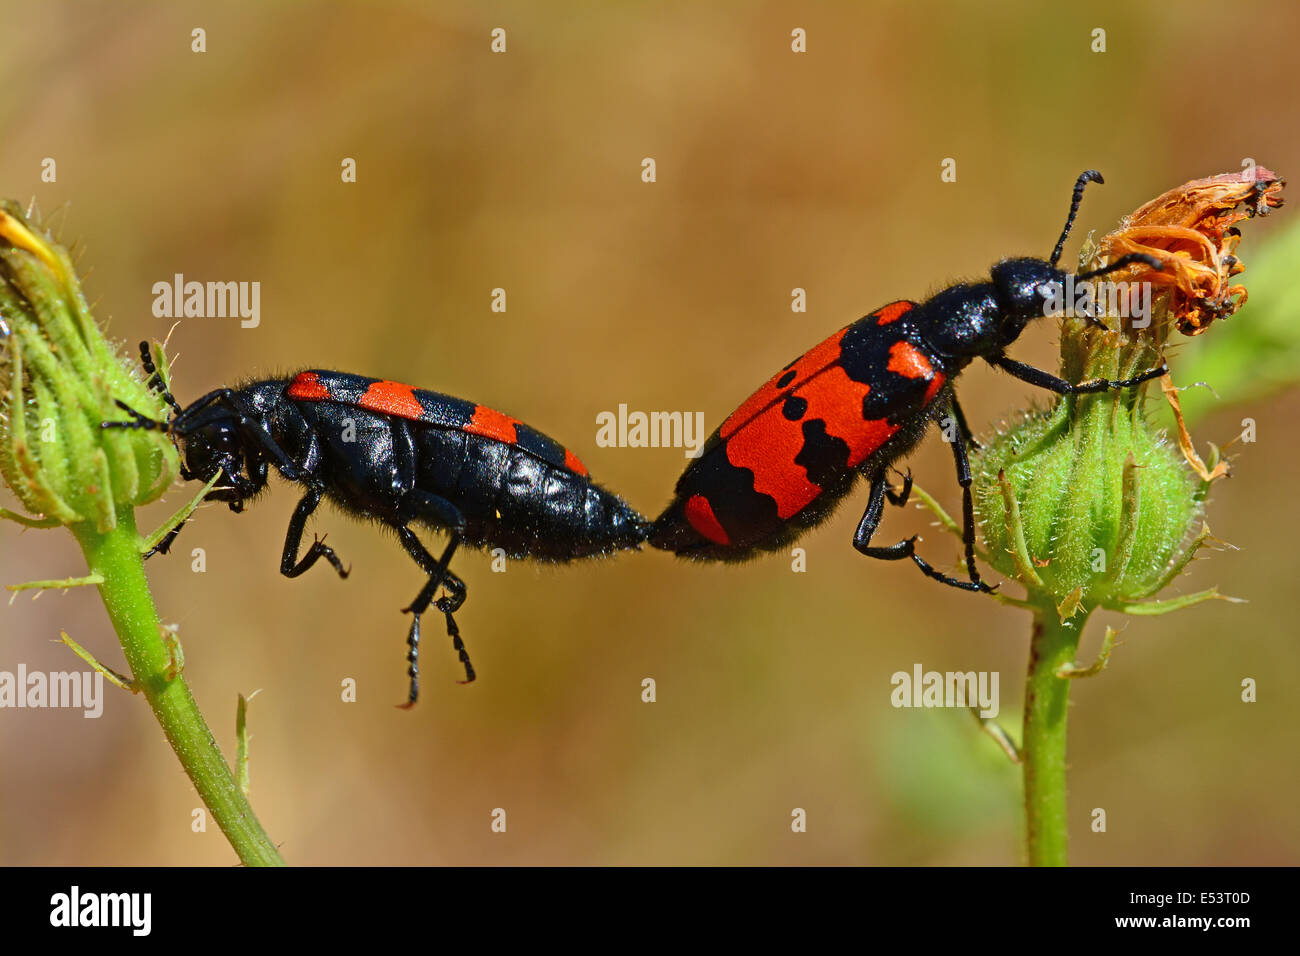 Los escarabajos de apareamiento, el comportamiento animal Foto de stock